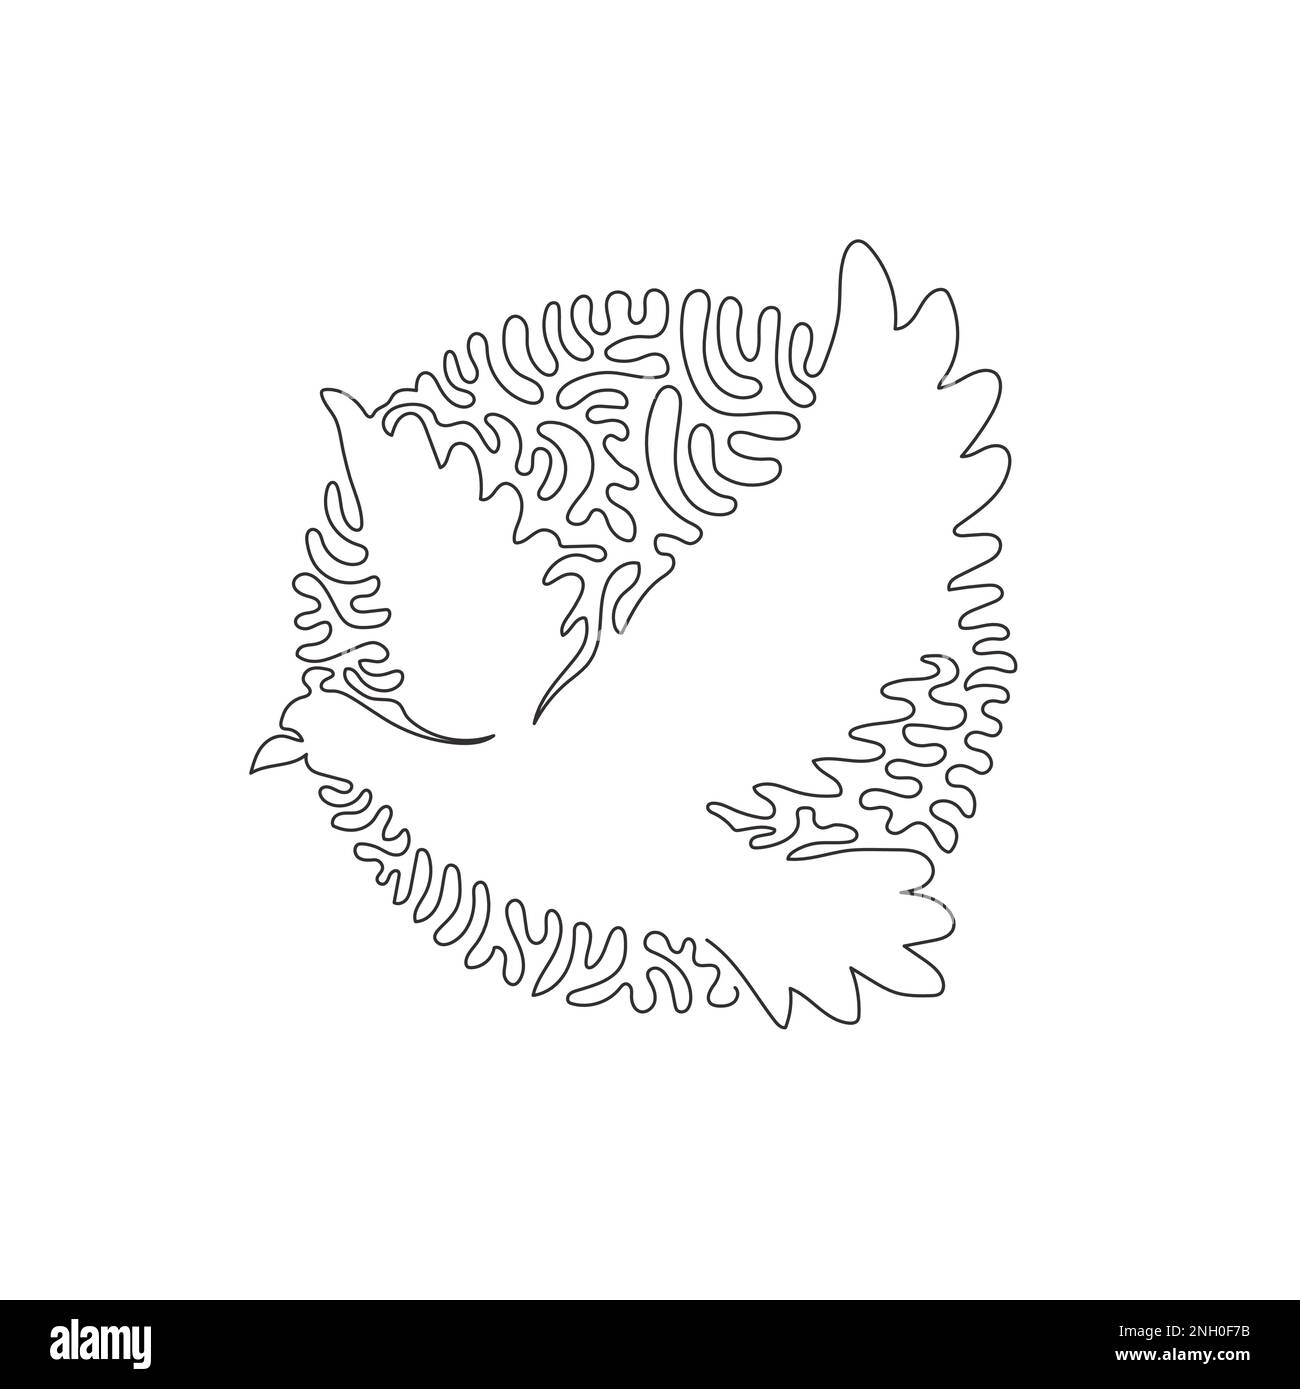 Eine einzige Strichzeichnung einer fliegenden Taube abstrakte Kunst. Vektorzeichnung mit durchgehenden Linien Darstellung einer wunderschönen Taube für Ikone Stock Vektor